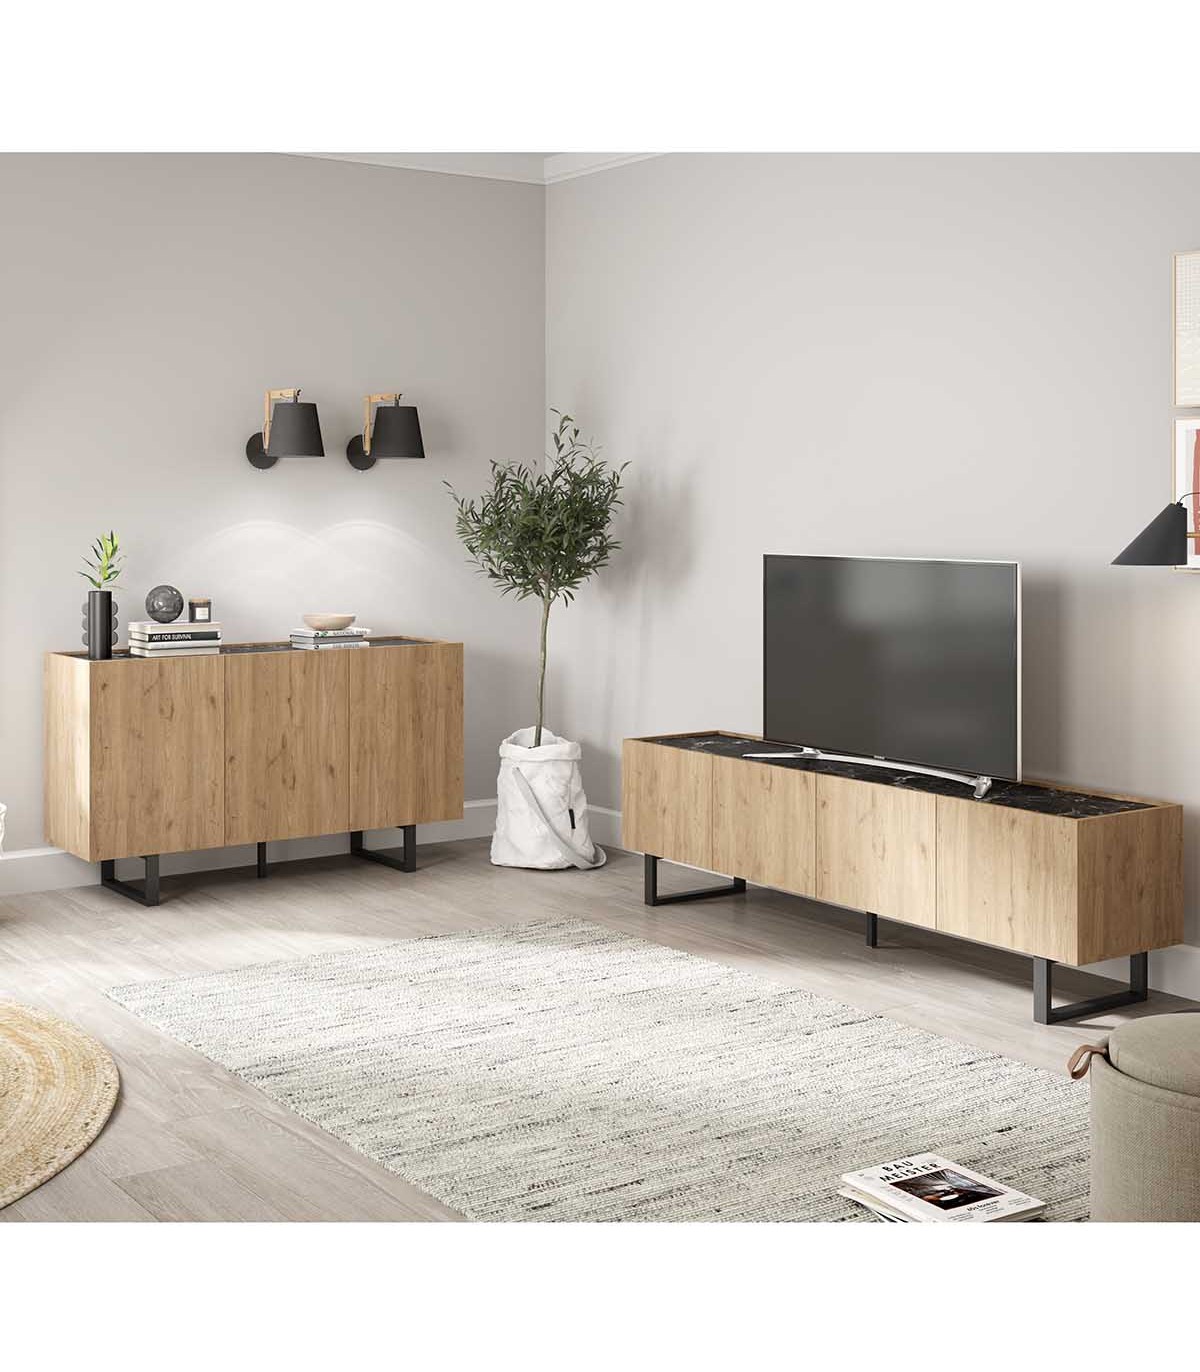 OFERTA - Mueble TV de estilo moderno